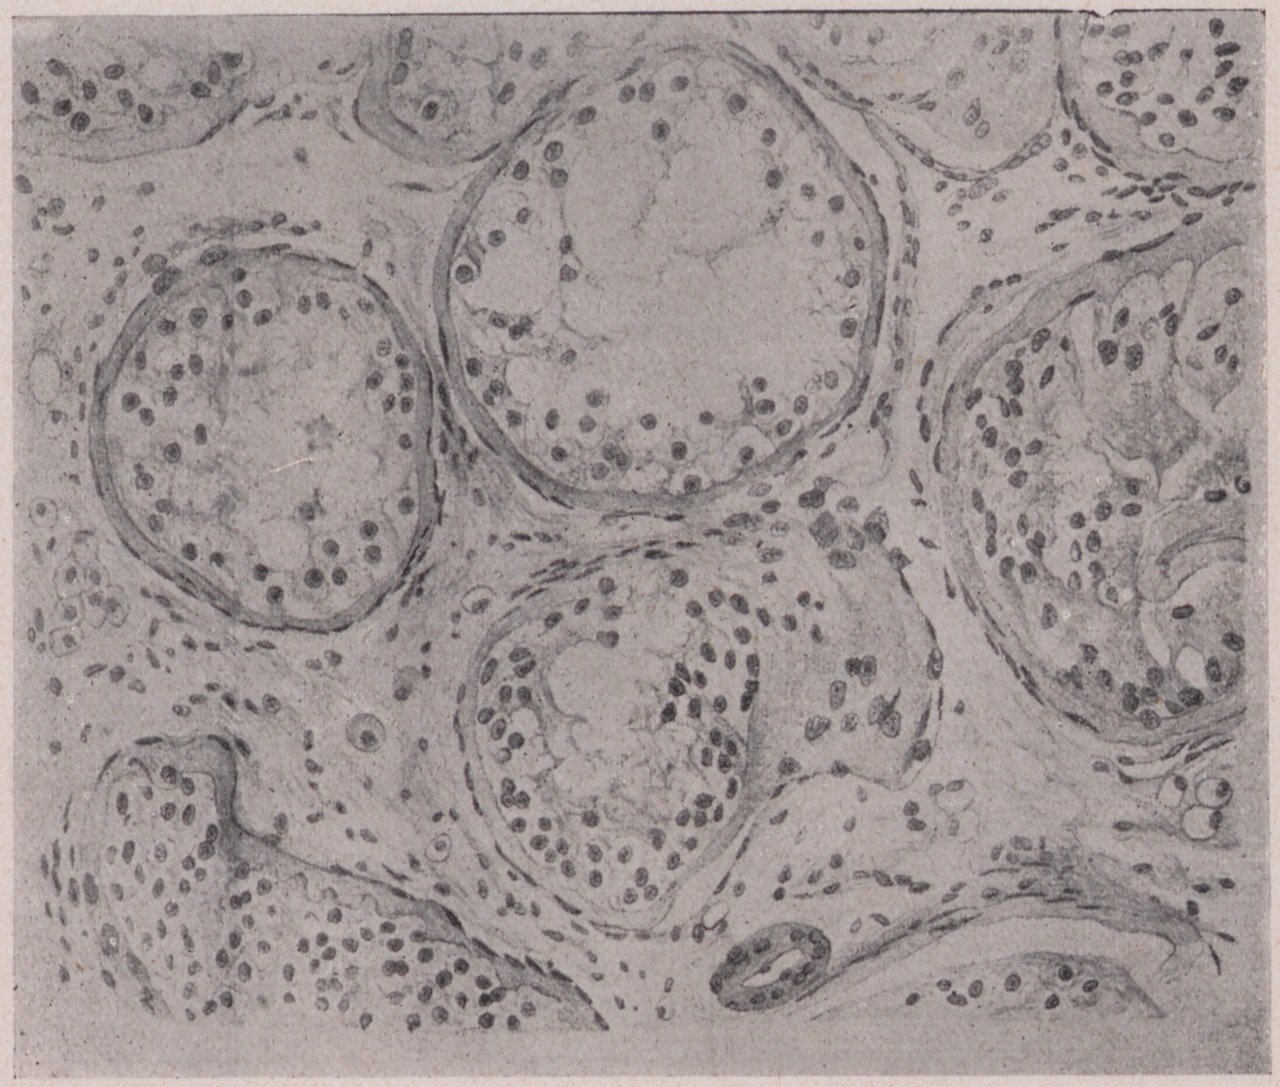 Abbildung einer mikroskopischen Aufzeichnung des Organgewebes eines Hoden (2) (Magnus-Hirschfeld-Gesellschaft Public Domain Mark)